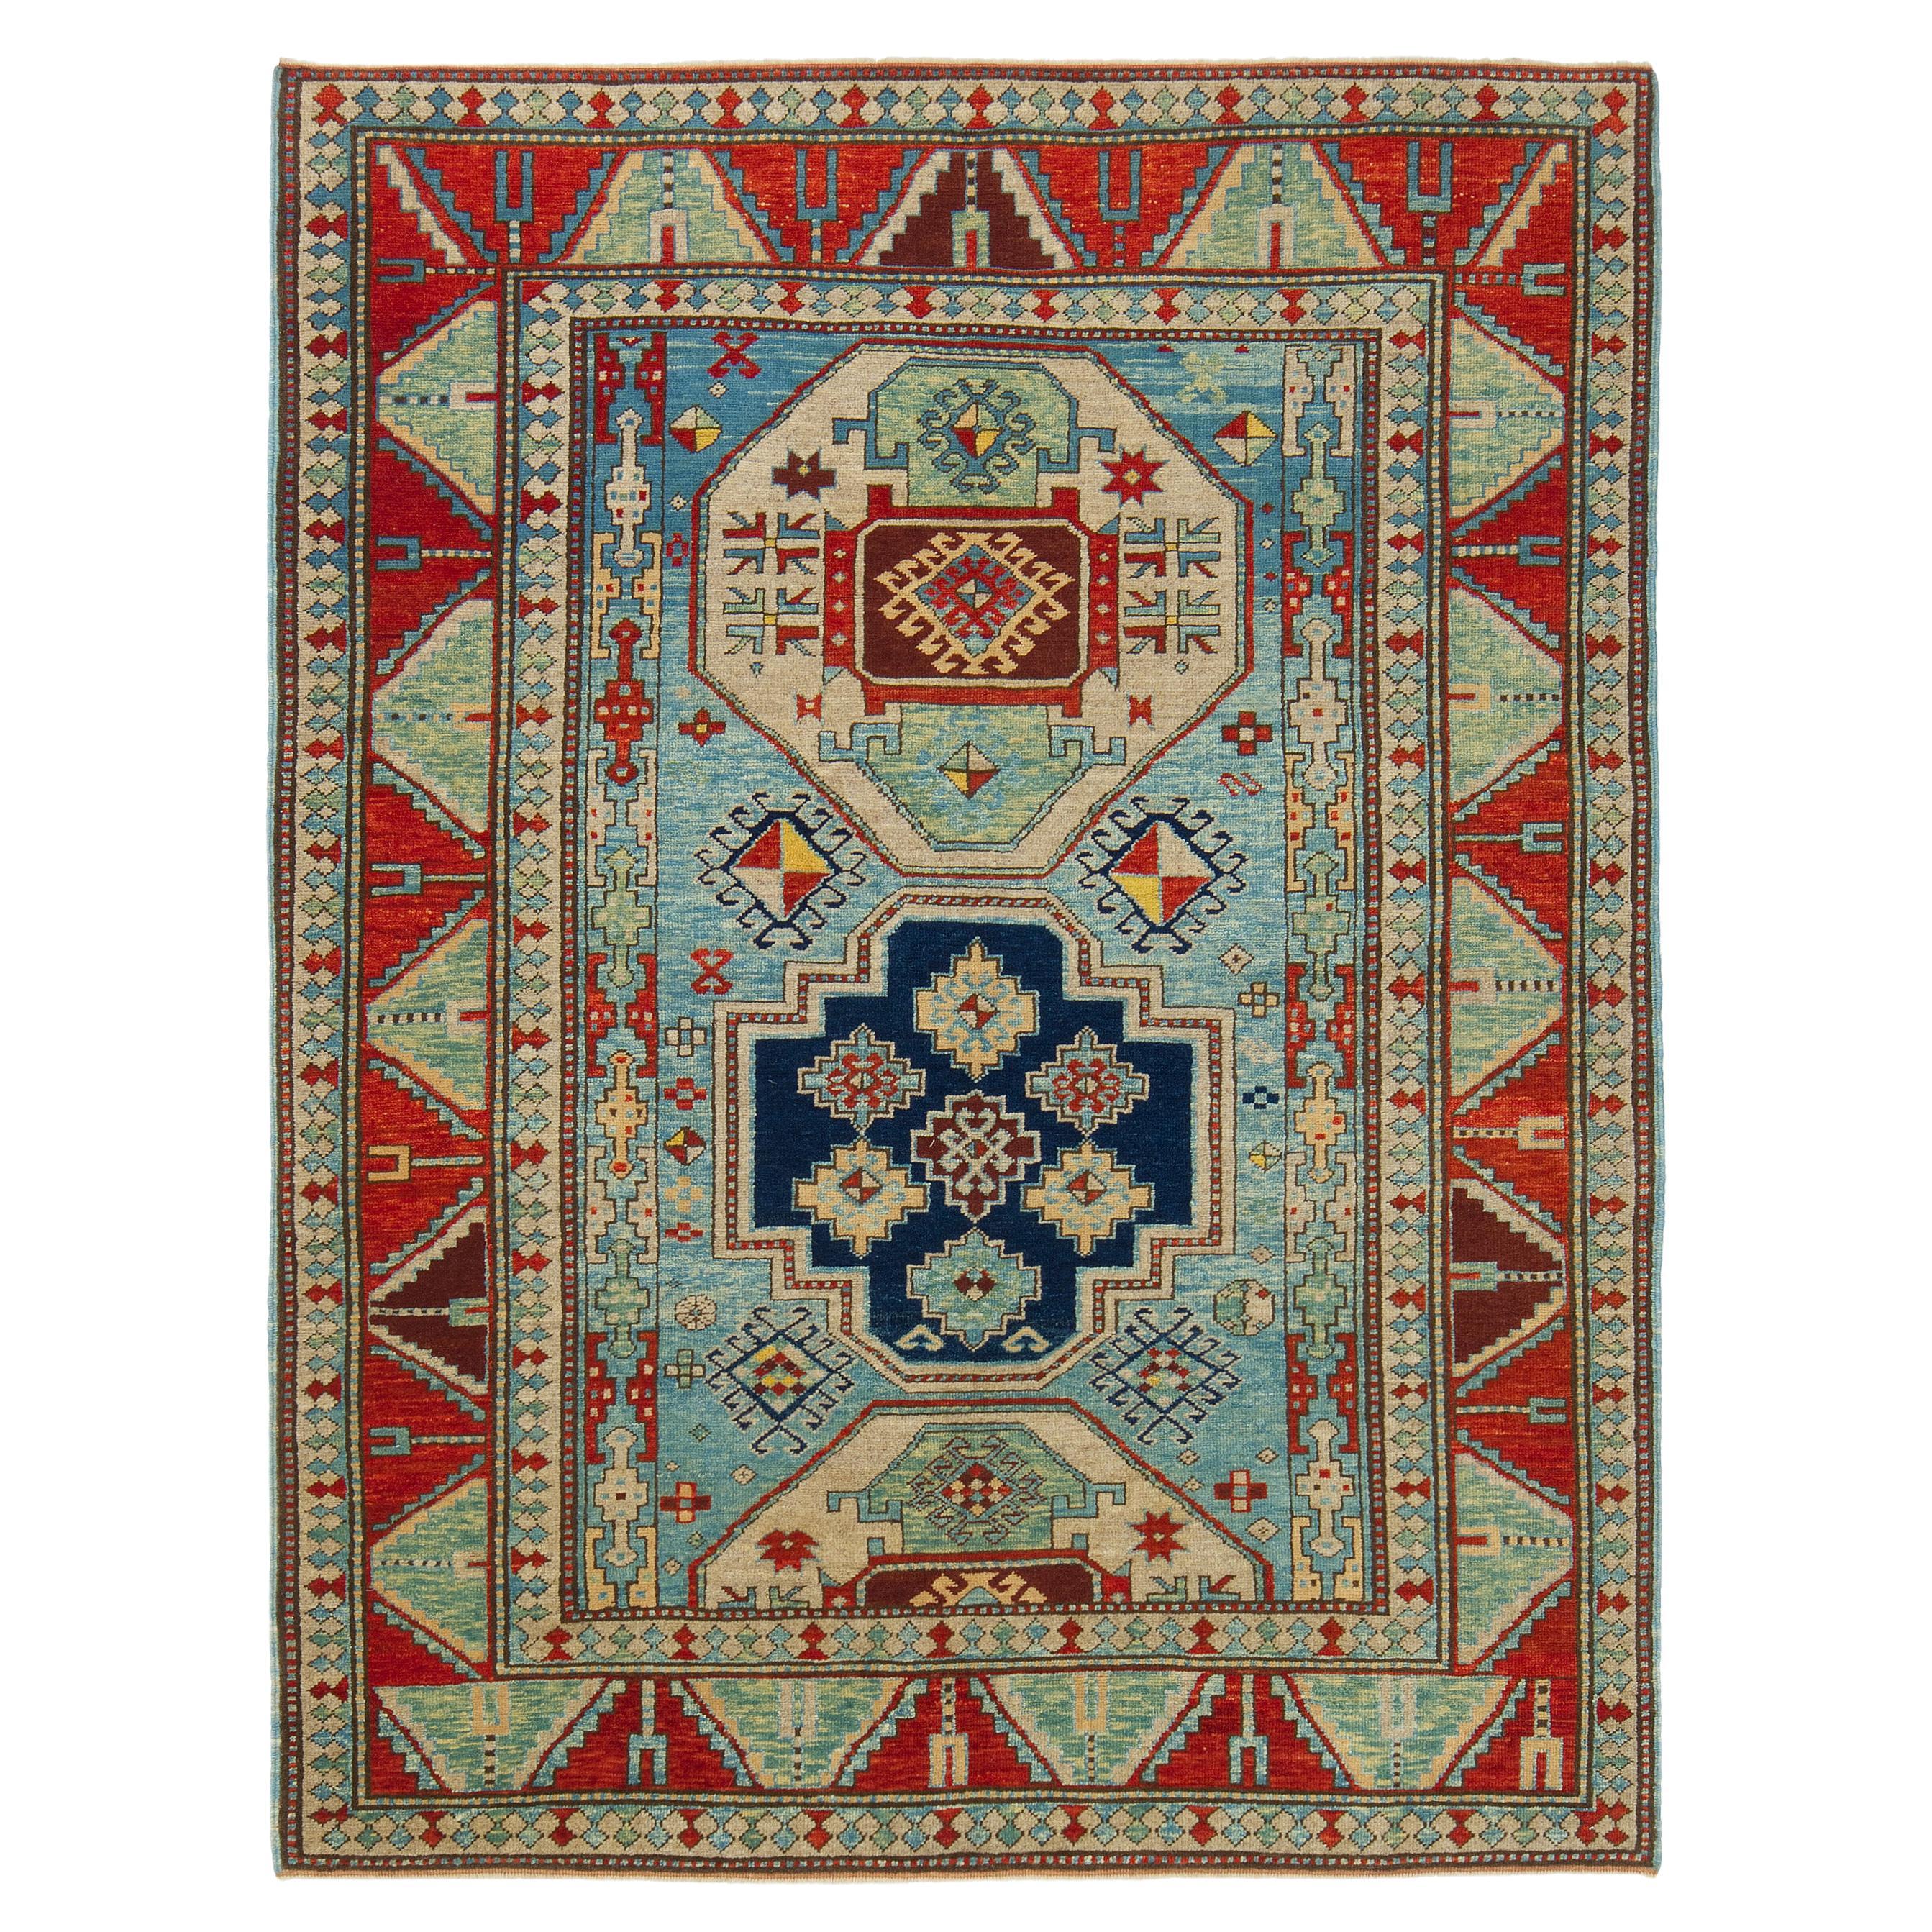 Ararat Rugs Lori Pambak Kazak Rug, 19th C Caucasus Revival Carpet Natural Dyed